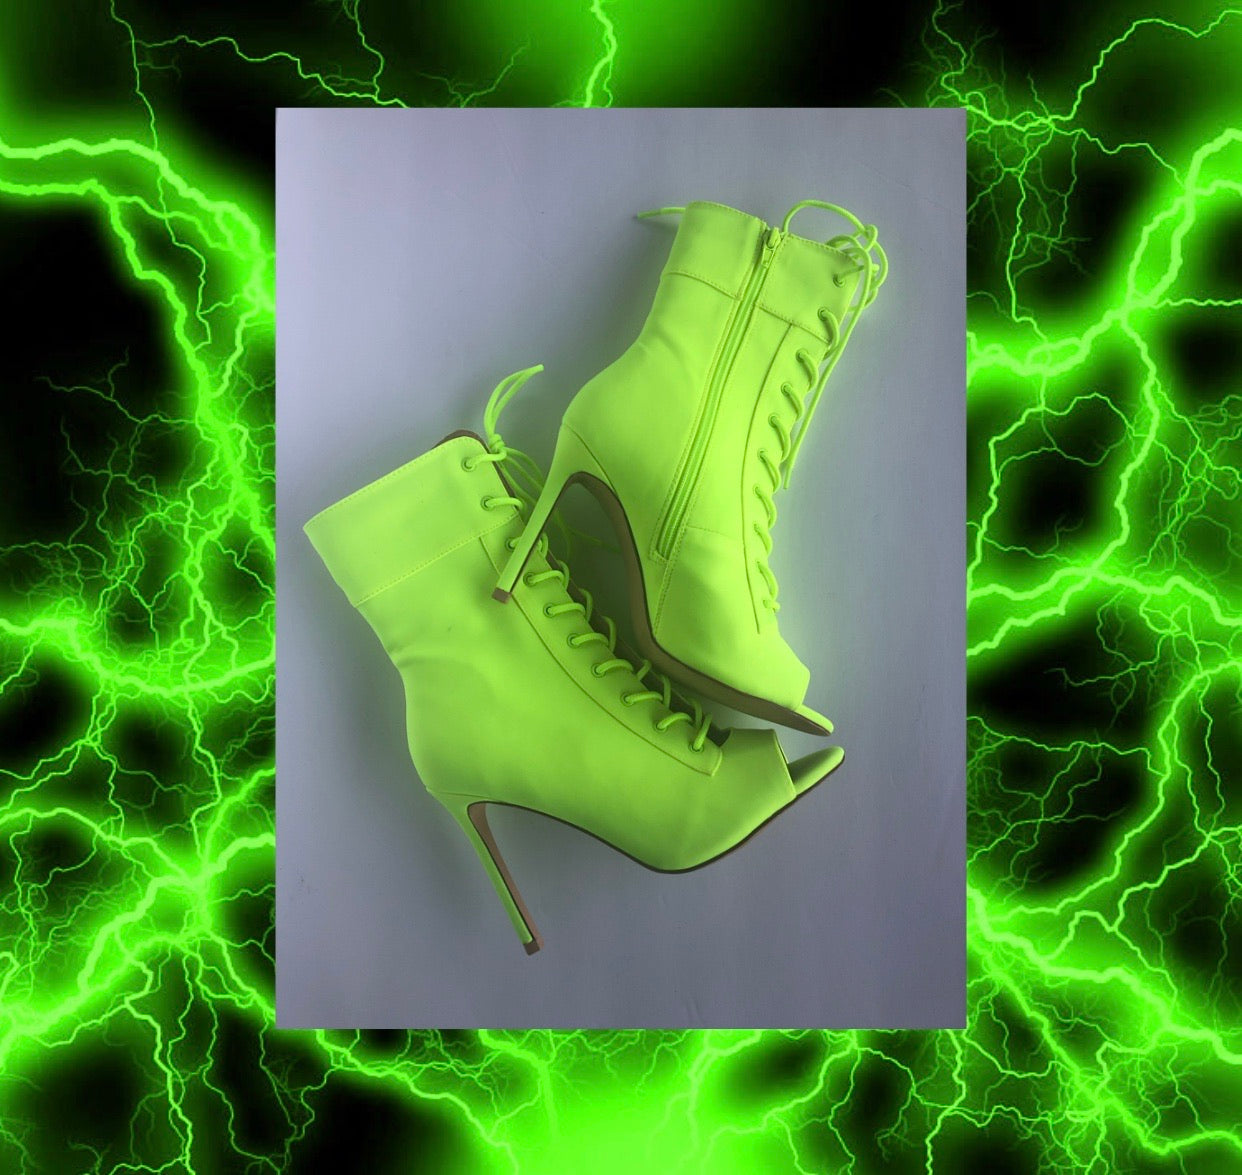 neon peep toe boots